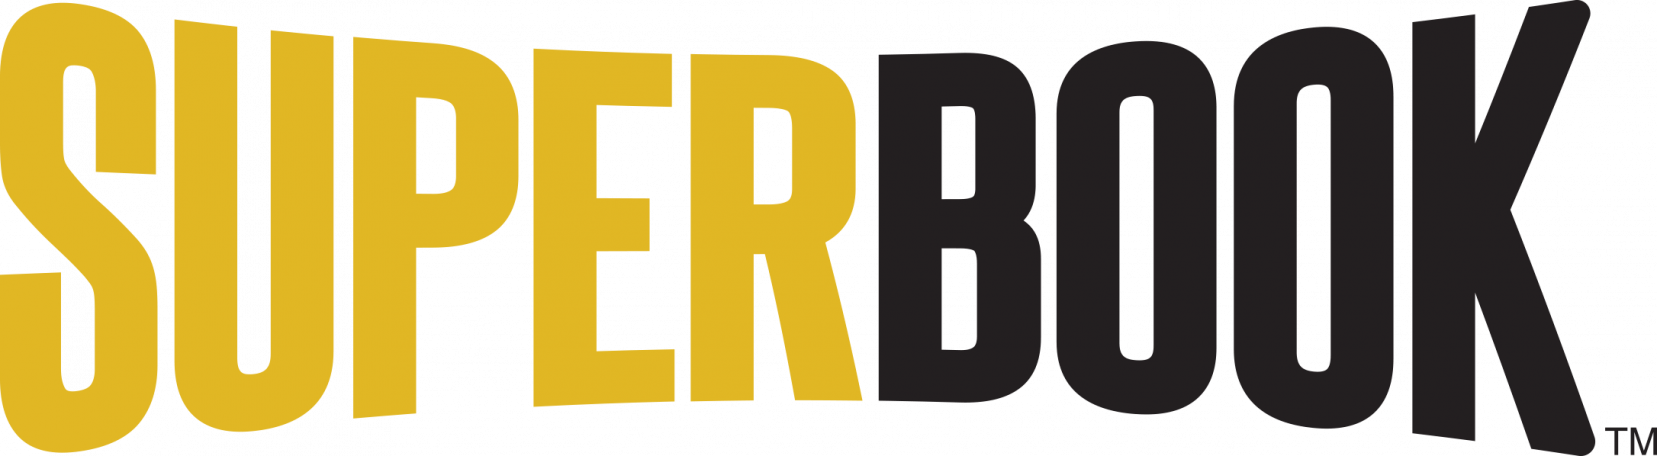 supoerbook logo